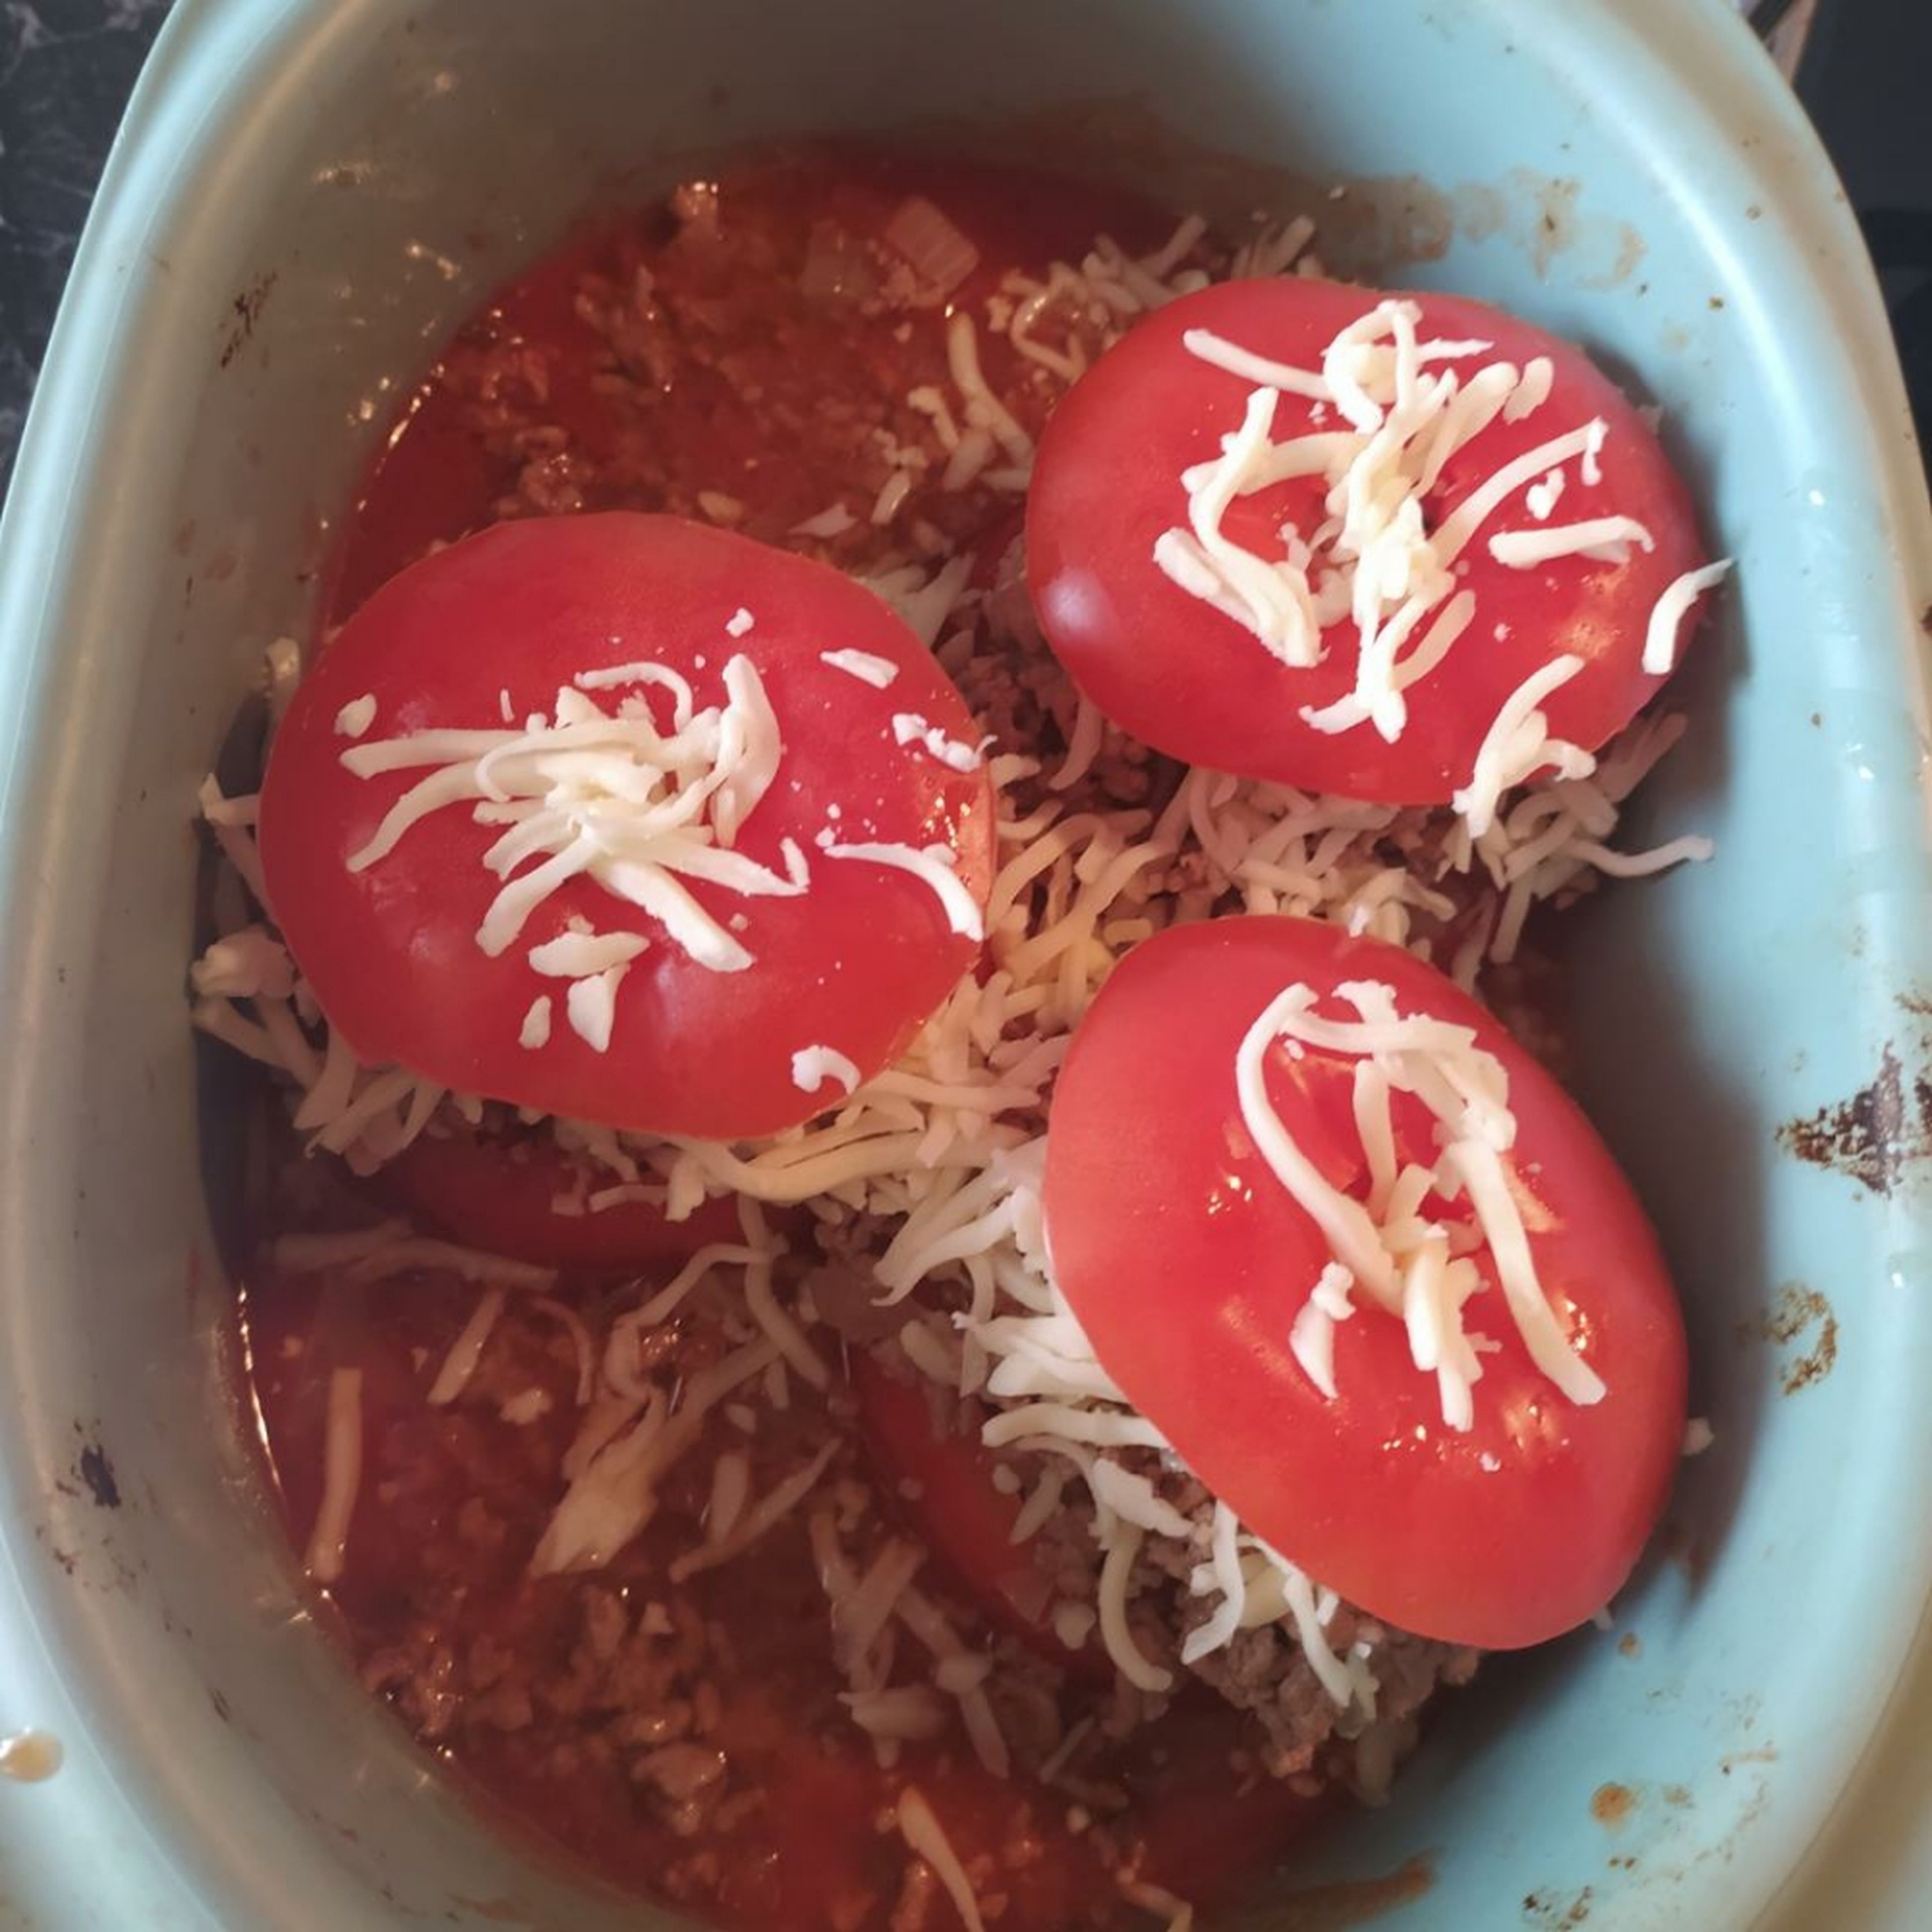 Tomaten mit Hack füllen und Brühe zugießen. Käse über die gefüllten Tomaten reiben und den Tomatendeckel wieder drauf legen. Falls du noch Hack übrig hast kannst du es mit in die Brühe geben.